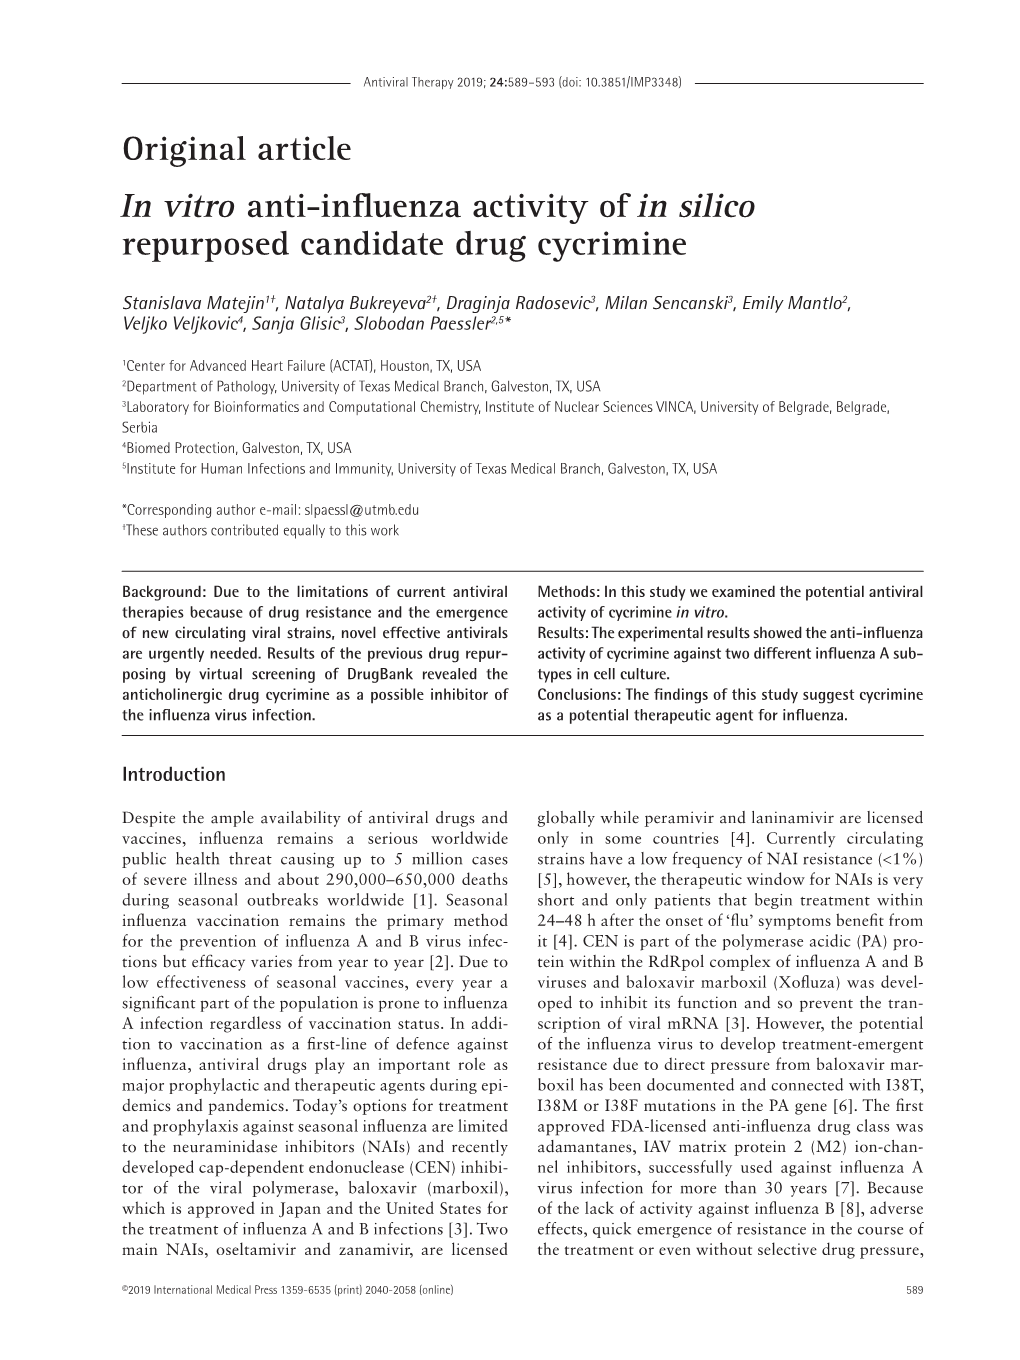 Original Article in Vitro Anti-Influenza Activity of in Silico Repurposed Candidate Drug Cycrimine